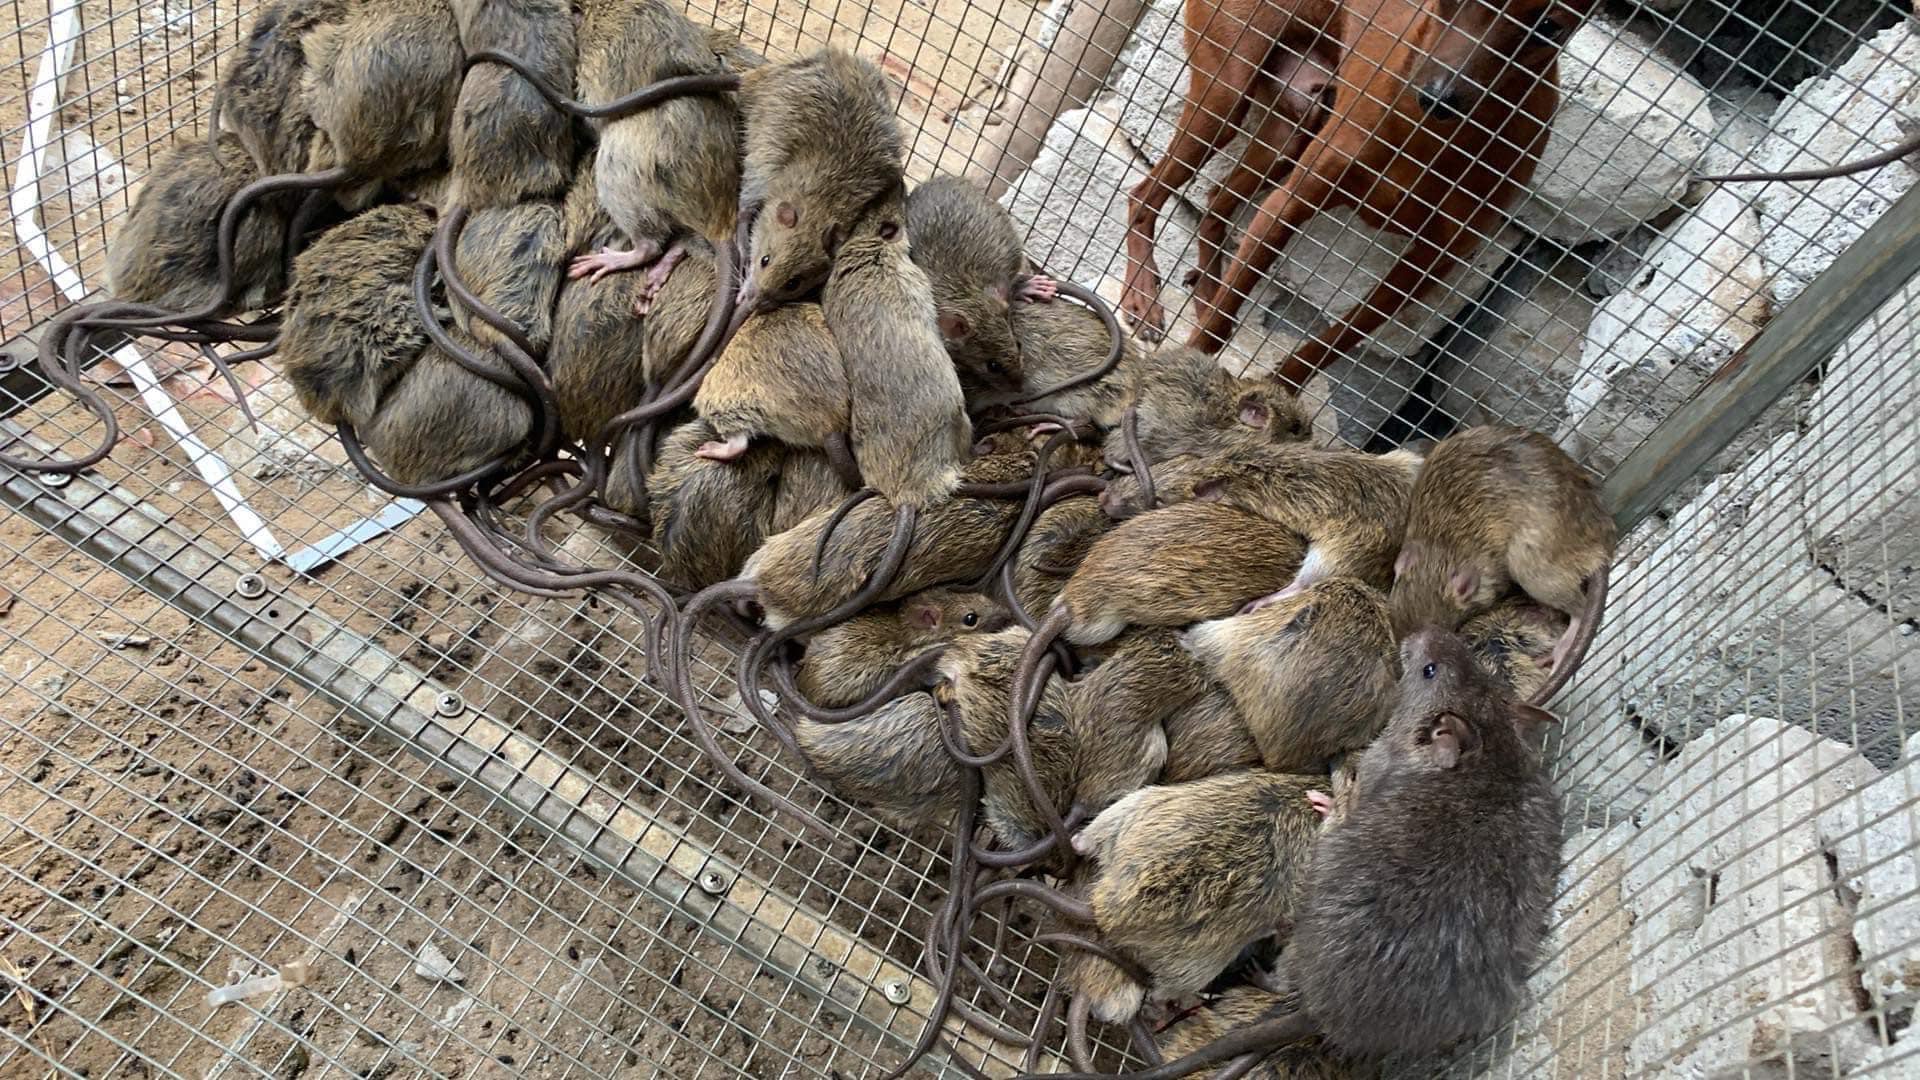 Chuột đồng được săn bắt về làm sạch và bán cho khách.